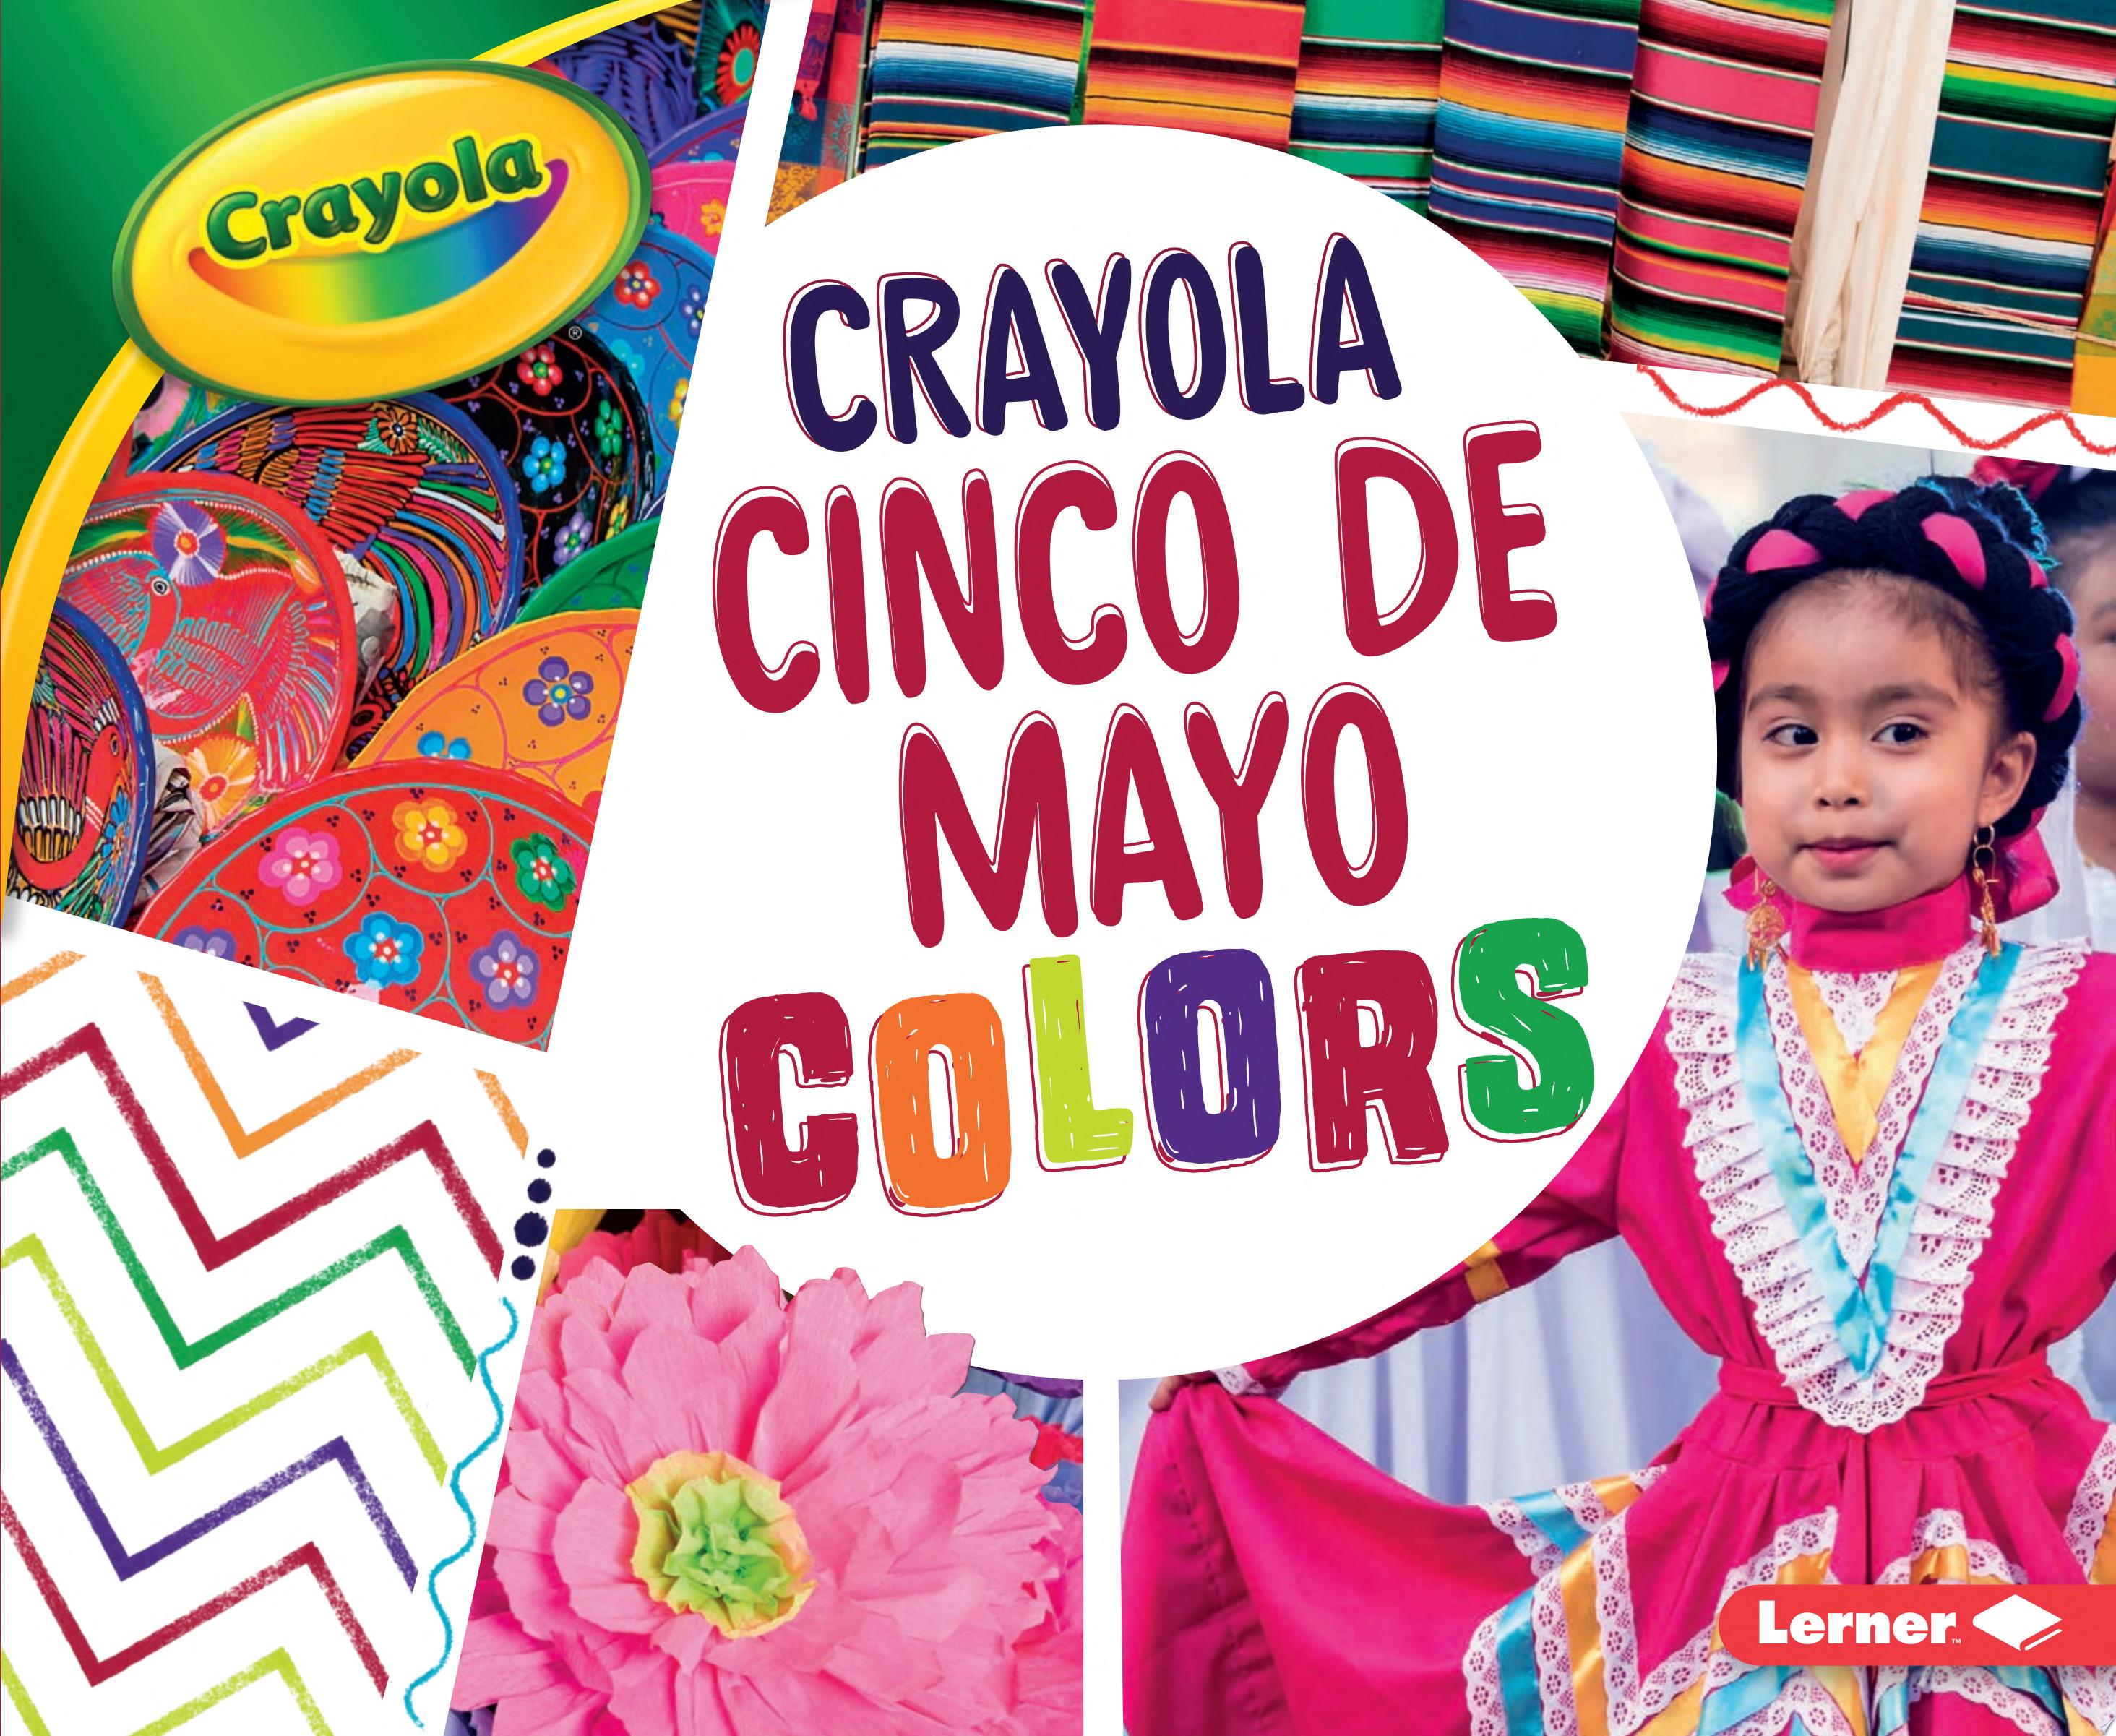 Image for "Crayola Cinco de Mayo Colors"